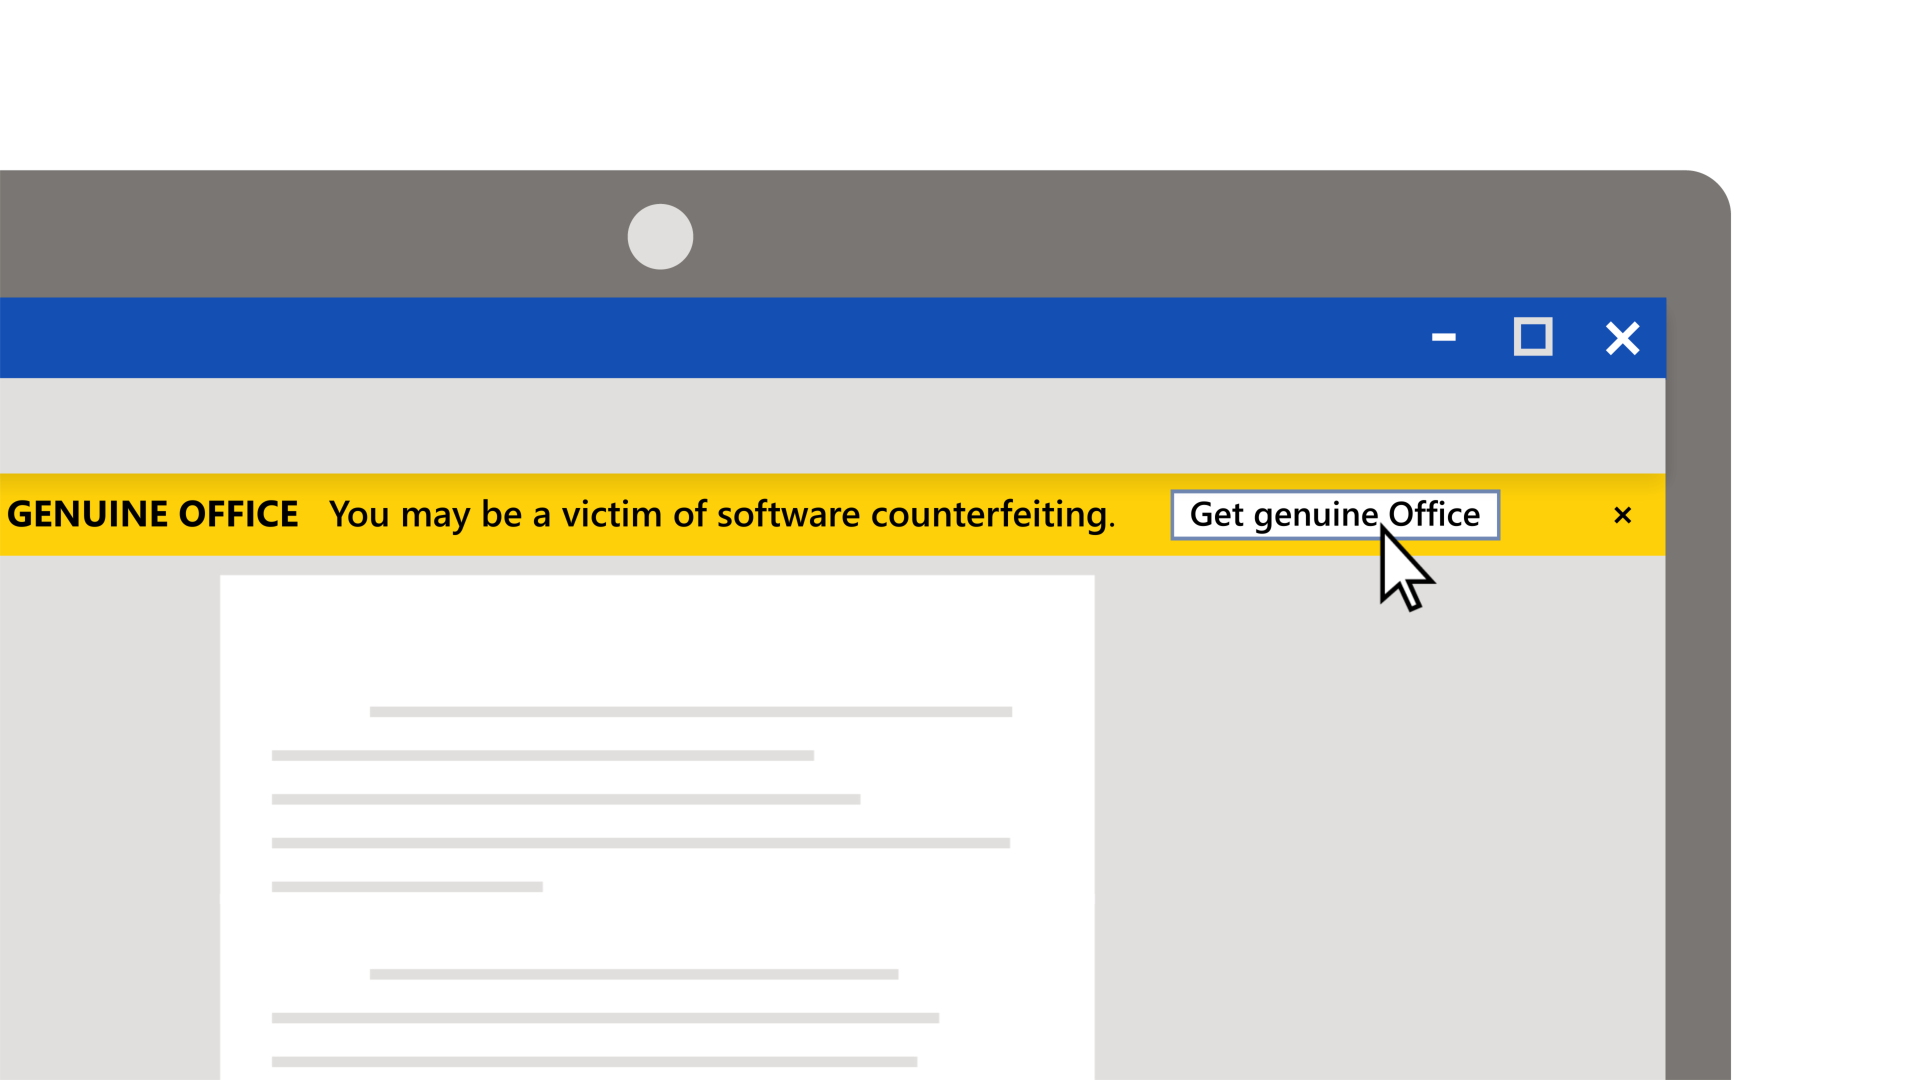 No se arriesgue y obtenga una licencia original de Office - Soporte técnico  de Microsoft